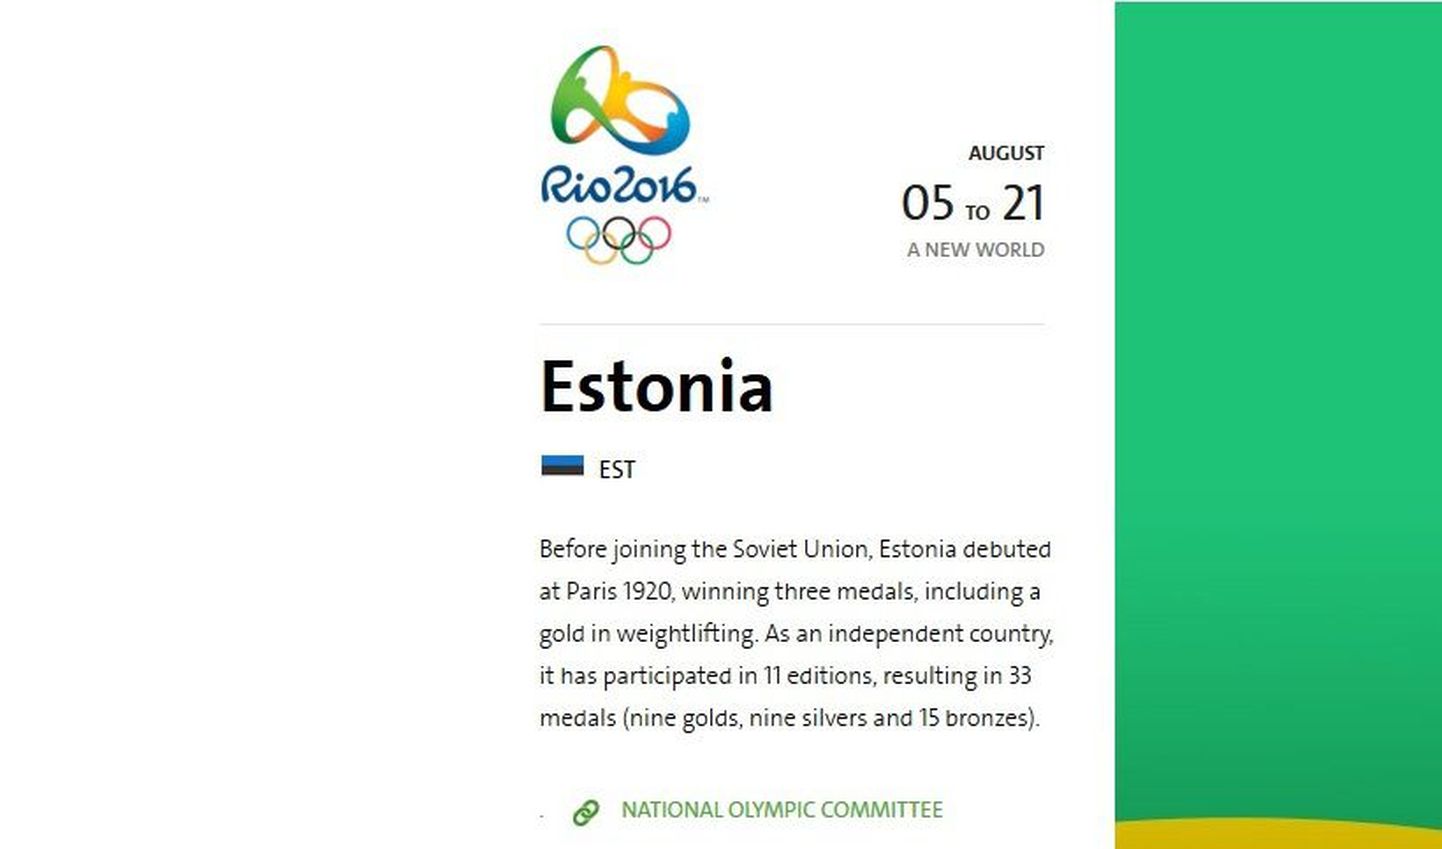 Утверждение о присоединении Эстонии к СССР на официальном сайте Олимпийских игр.